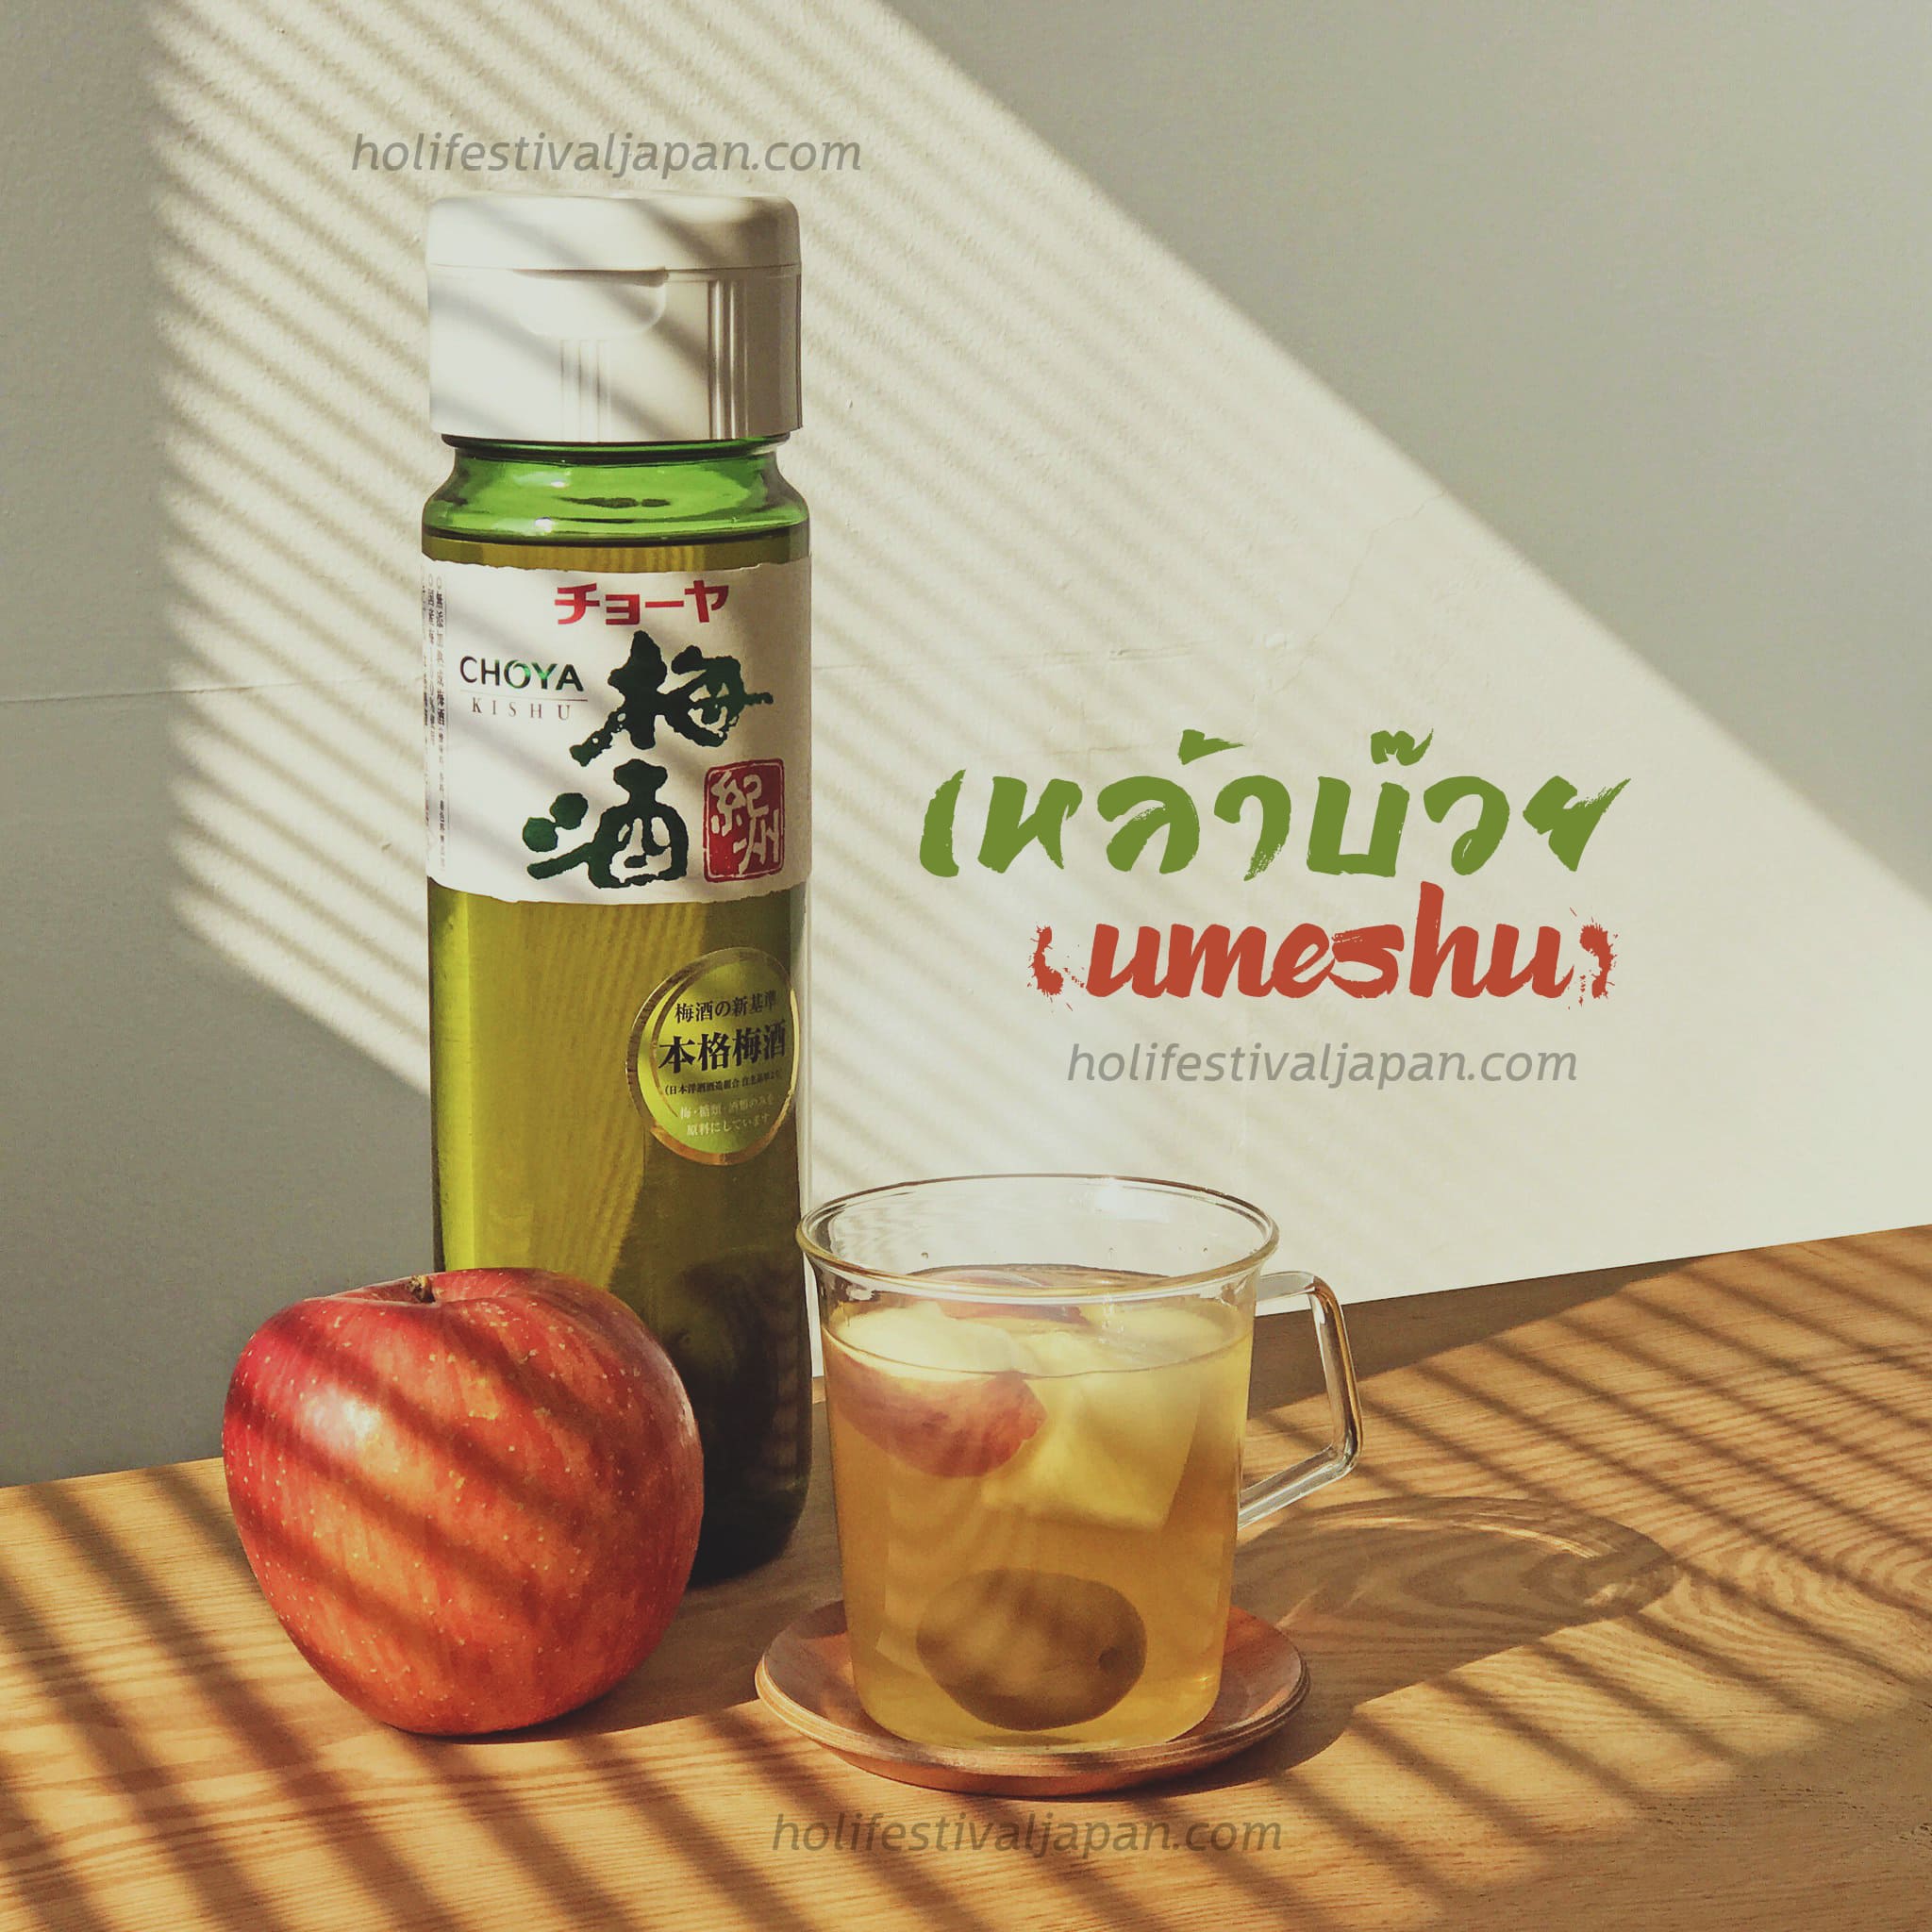 เหล้าบ๊วย (Umeshu) เครื่องดื่มรสชาติหวาน อร่อยแต่สามารถทำให้เมาได้ง่าย